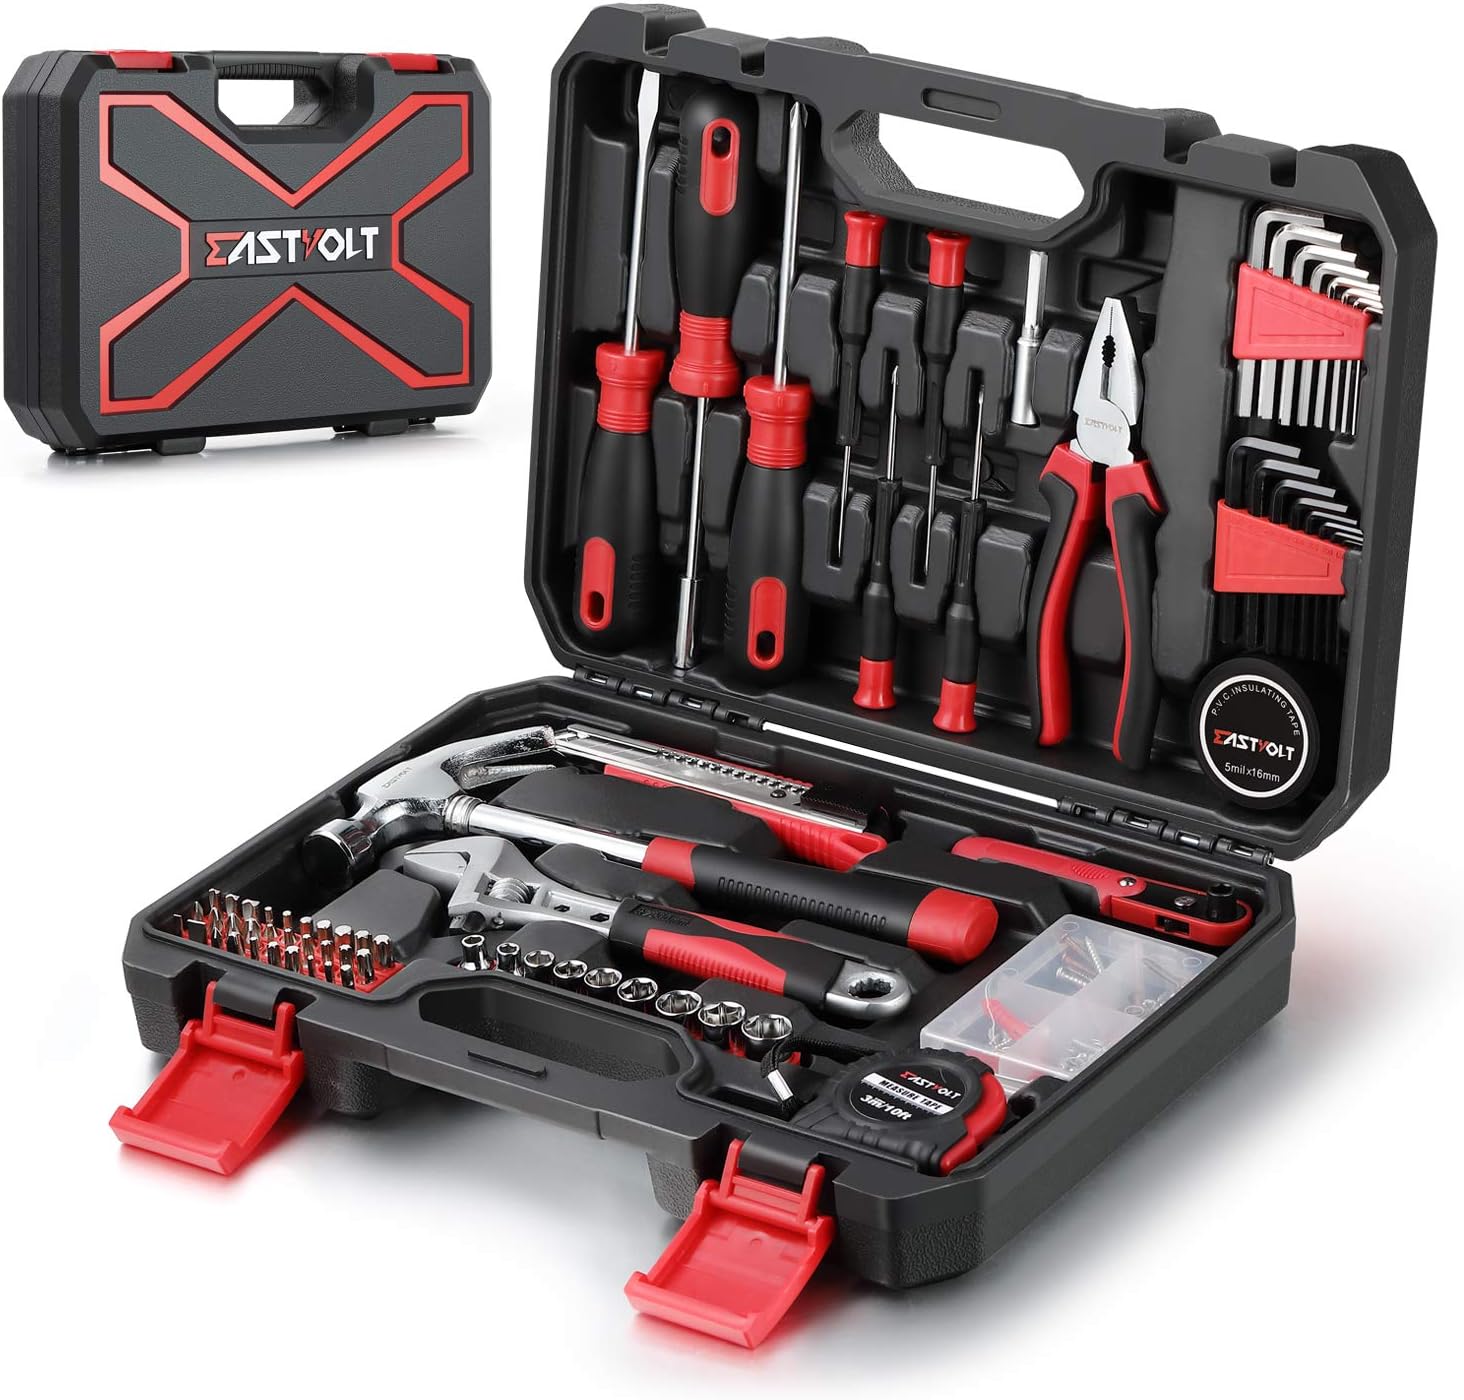 Eastvolt 128-Piece Home Repair Tool Set, Tool Sets for [...]